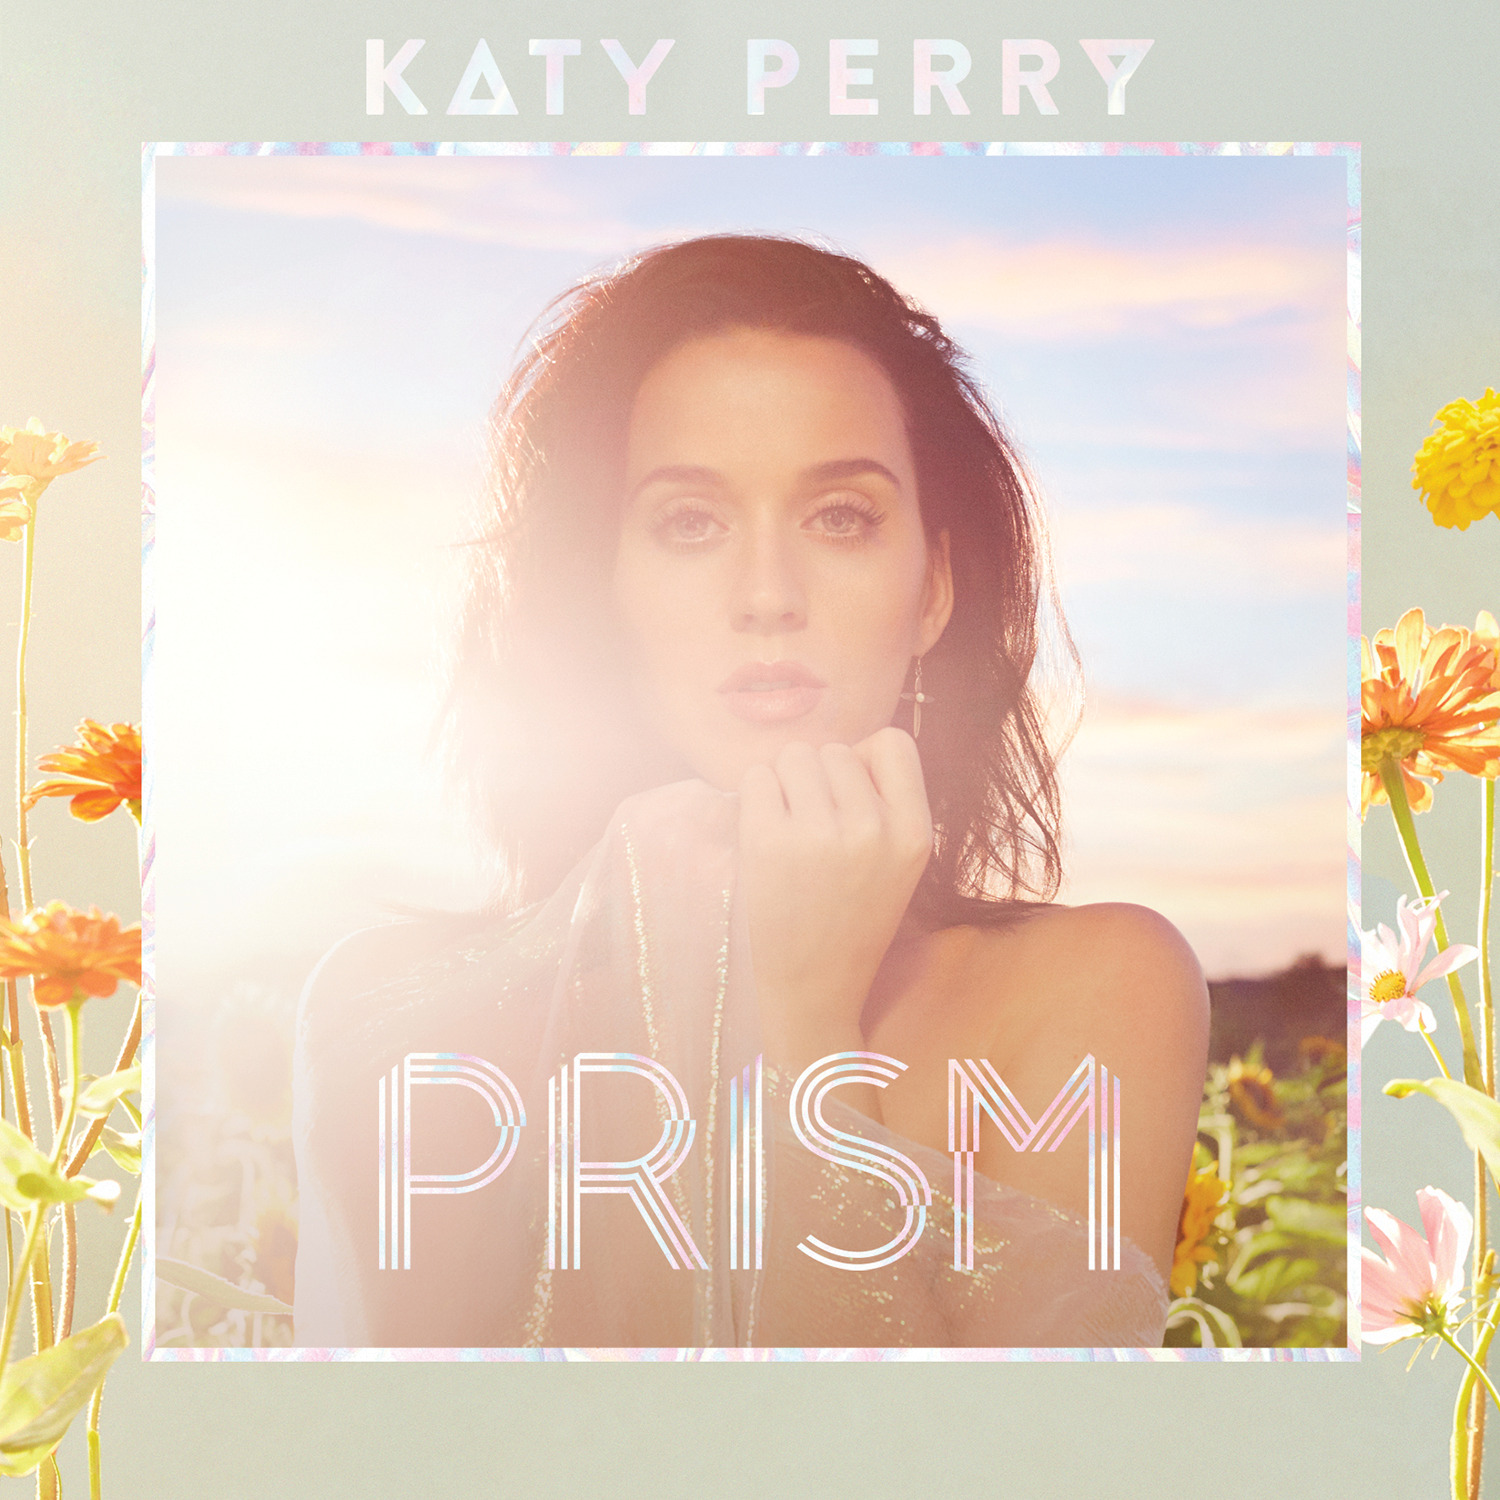 Capa do álbum PRISM da cantora Katy Perry. Na arte da capa, a imagem da cantora está centralizada a partir do busto. Uma borda estilizada apresenta uma paleta de tons suaves com flores nas cores laranja e amarelo. Perry é uma mulher branca de cabelos escuros e olhos claros. Ela está em um campo de girassol. No topo da arte da capa, o nome “Katy Perry” aparece em letras garrafais. Já na parte inferior, o título do disco “PRISM” está escrito da mesma forma.